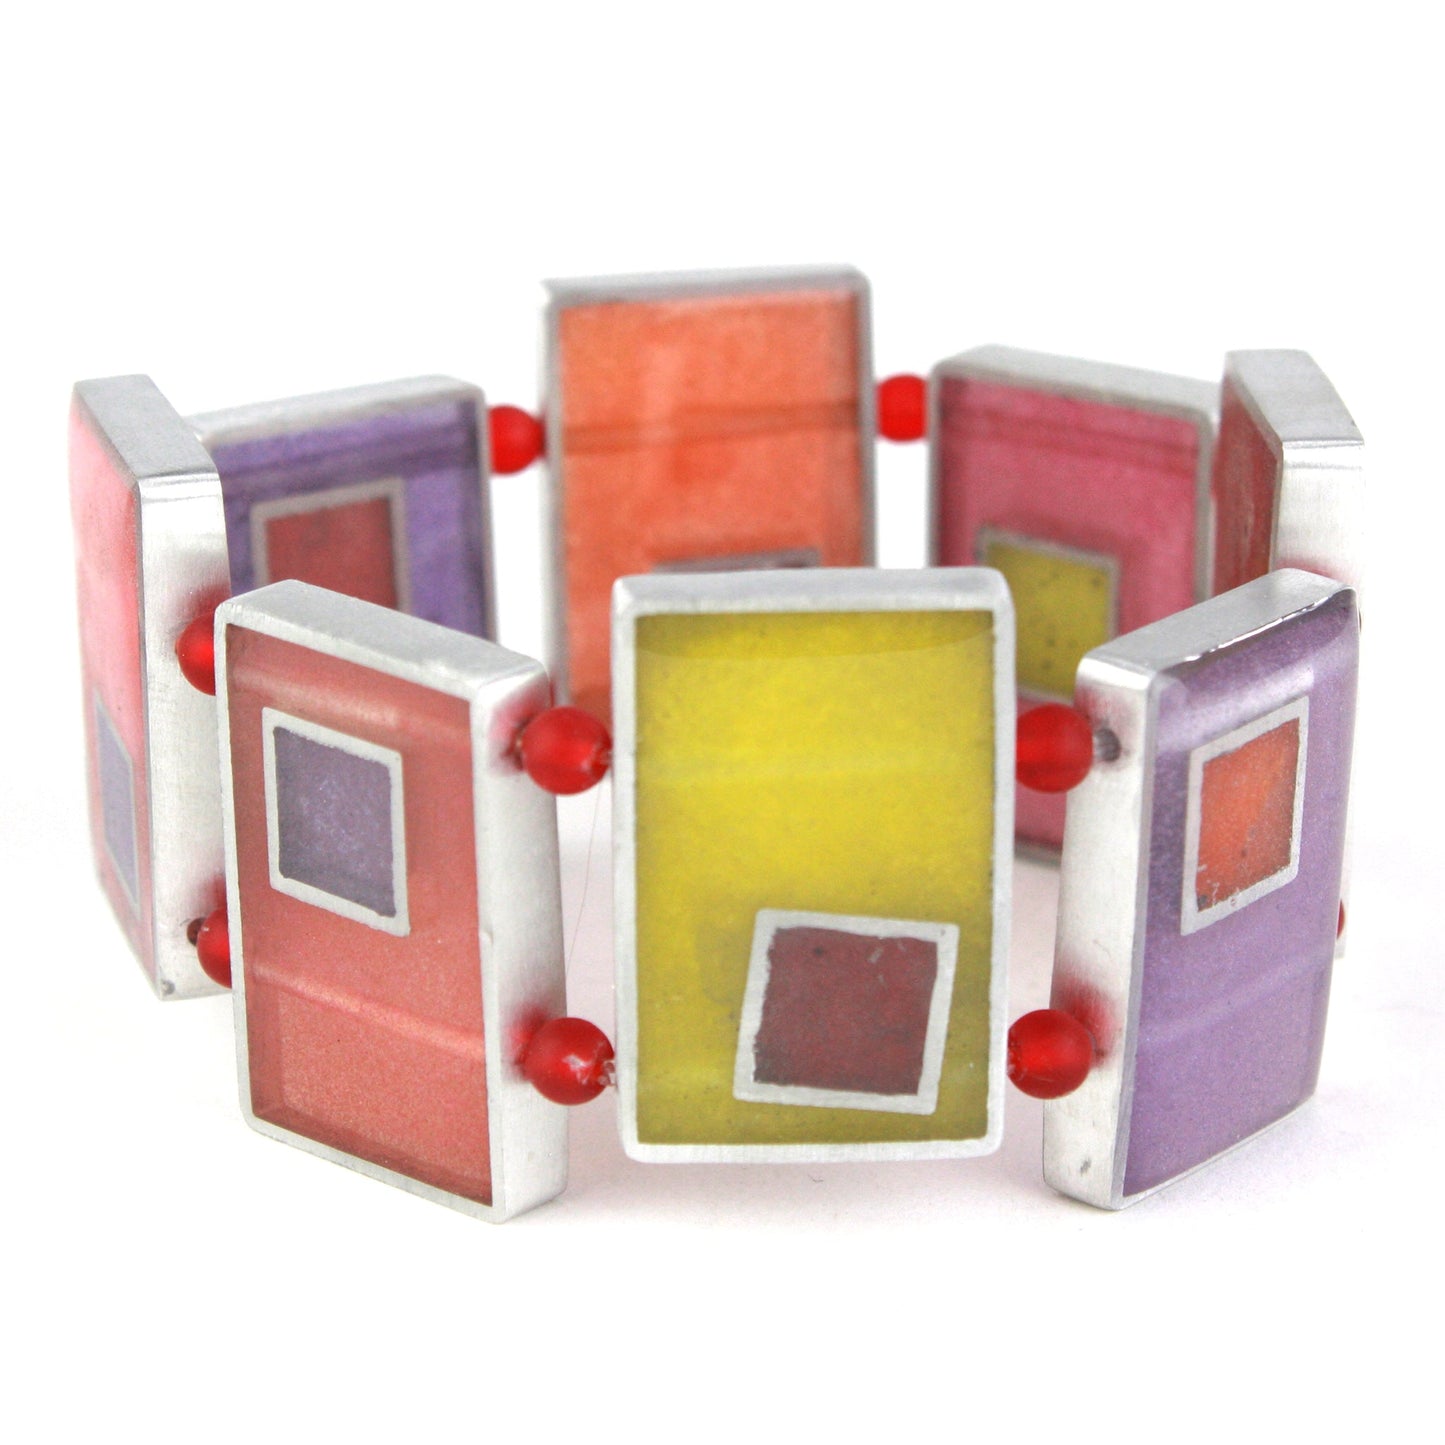 Resinique rectangle bracelet - Reds, oranges and purples -wholesale